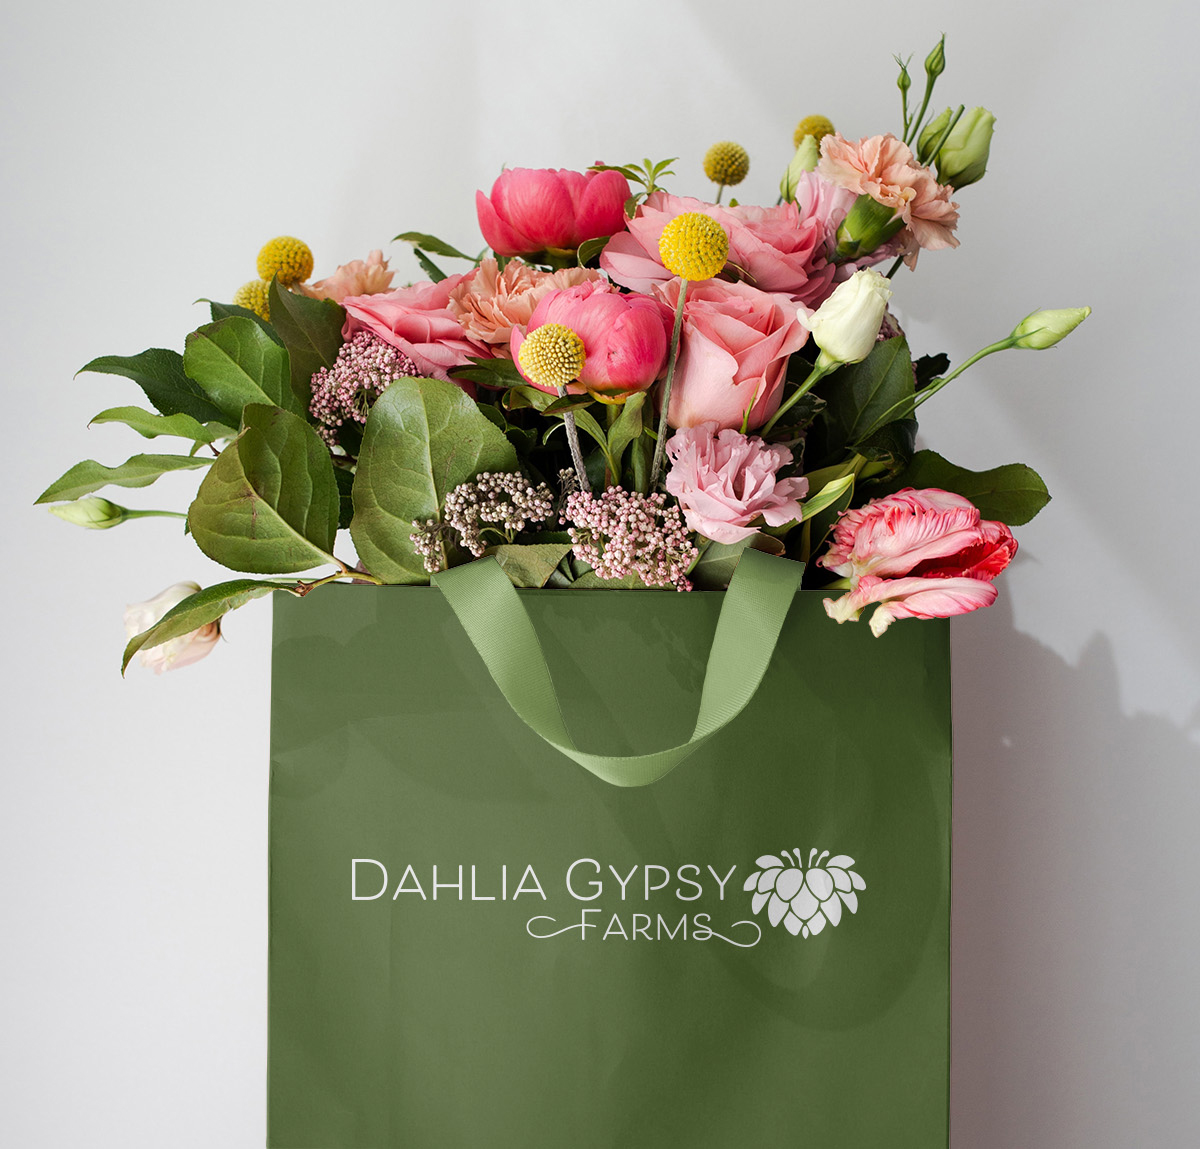 Dahlia Gypsy flower bag mockup